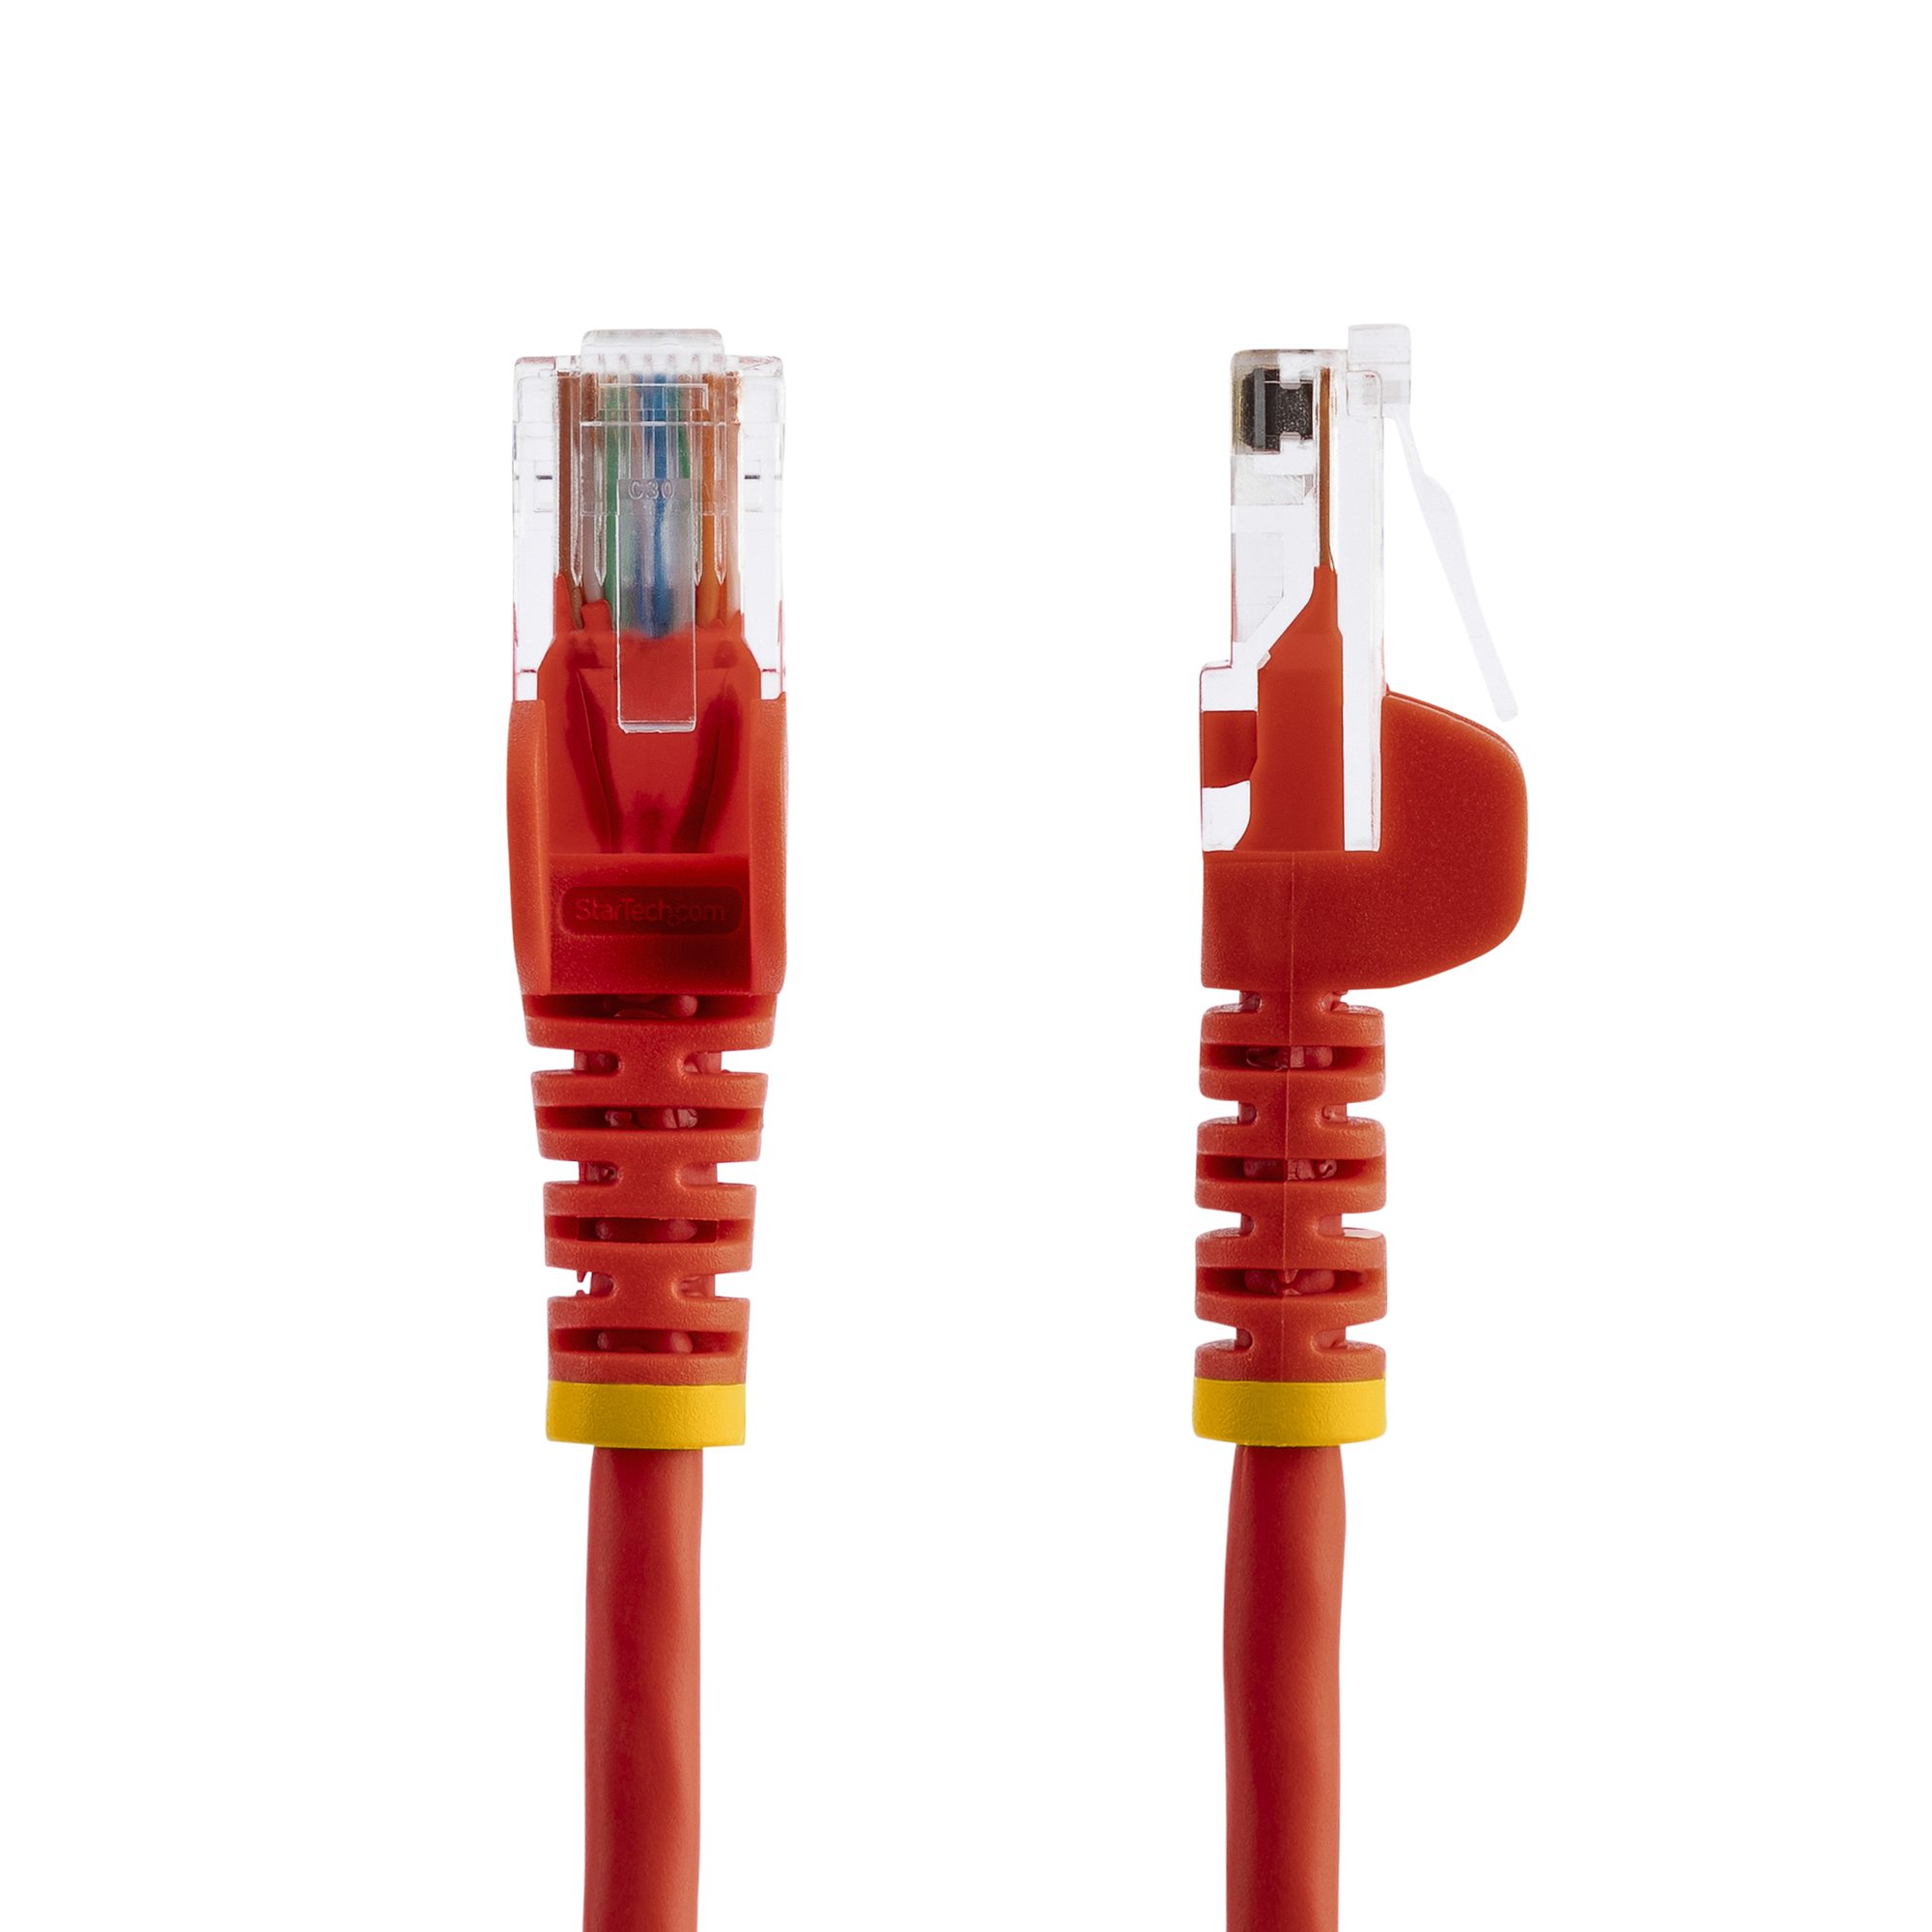 Cable De Red Lan Patchcord 3 Metros Utp Cat. 5e Rj45 Pc